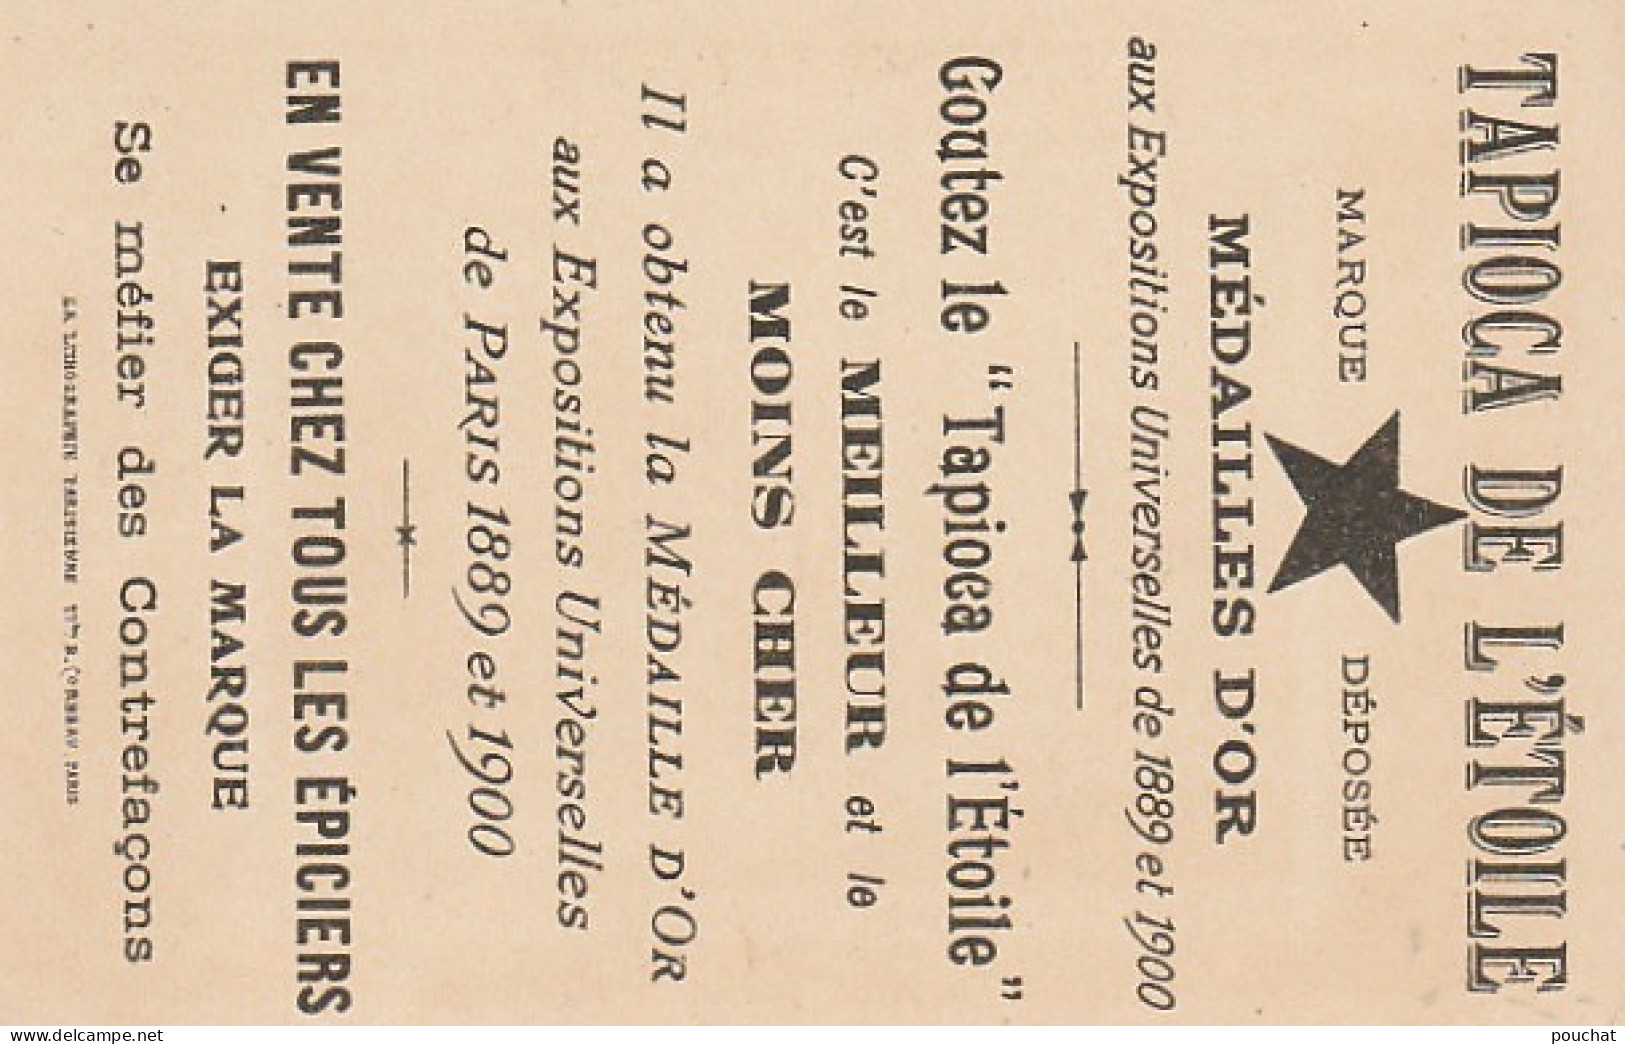 TE 5- TAPIOCA DE L' ETOILE - EXPOSITION UNIVERSELLE 1900 - PALAIS DE LA CERAMIQUE - CARTE PUB TAPIOCA DE L' ETOILE  - Other & Unclassified